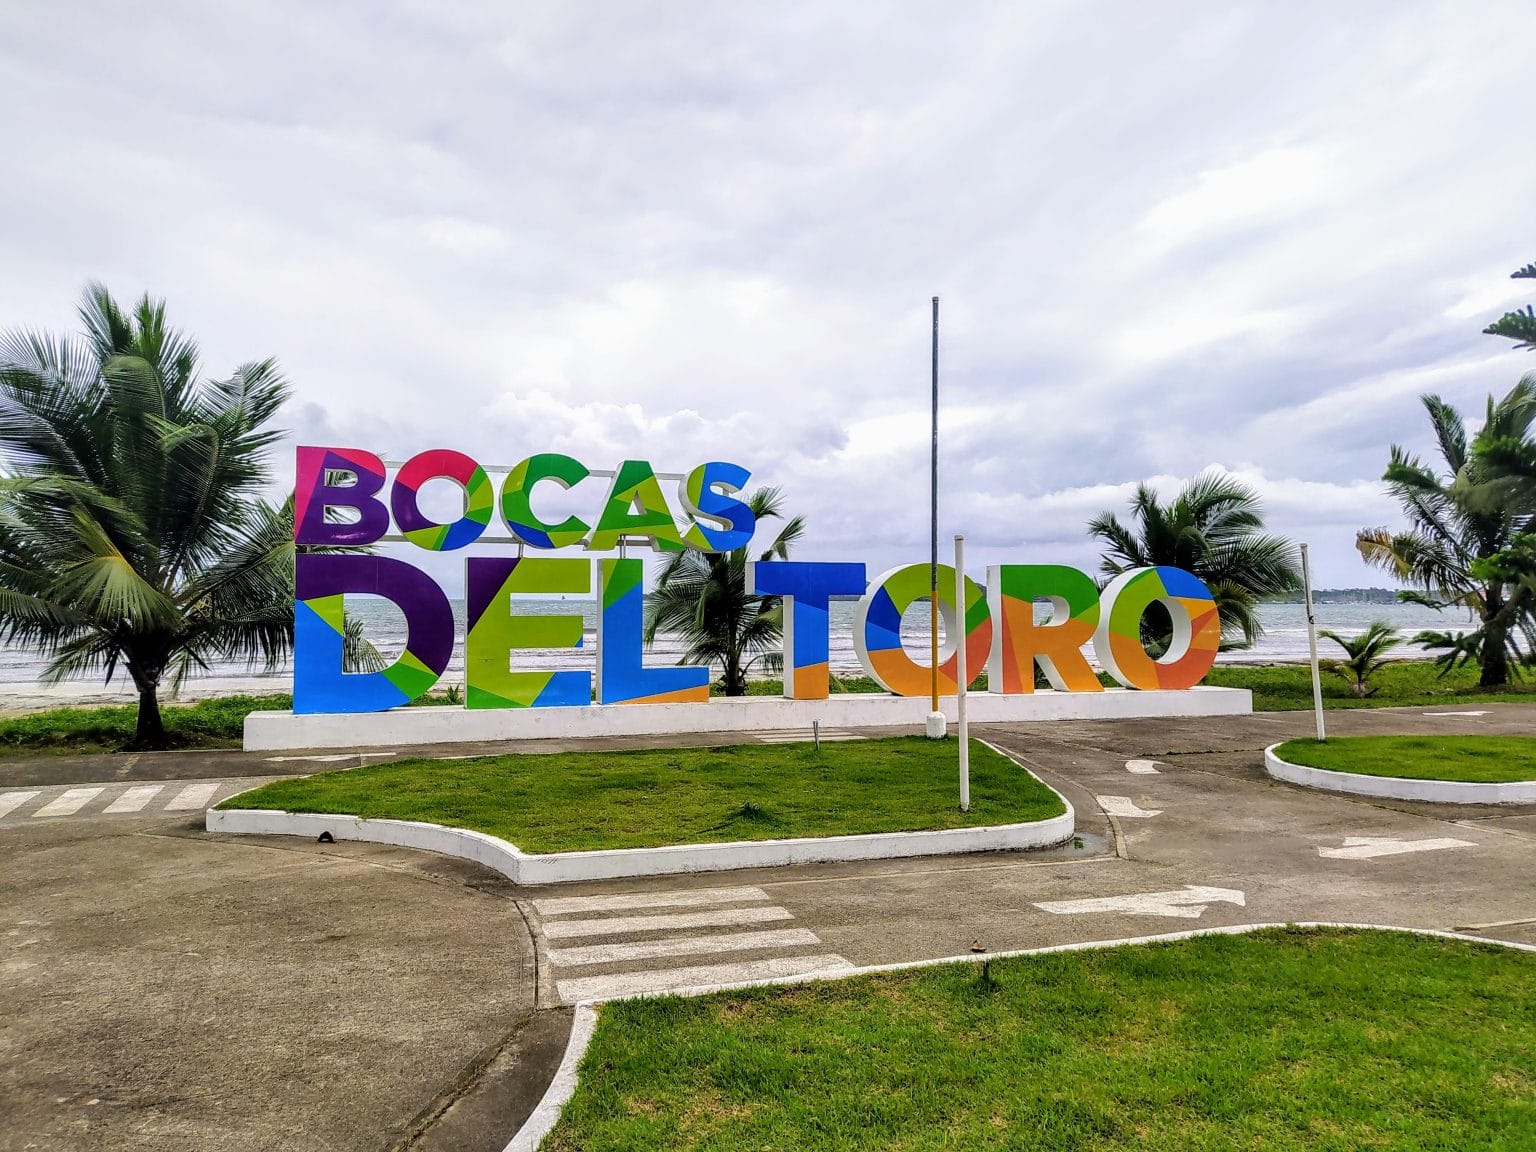 Bocas del Toro - Panama